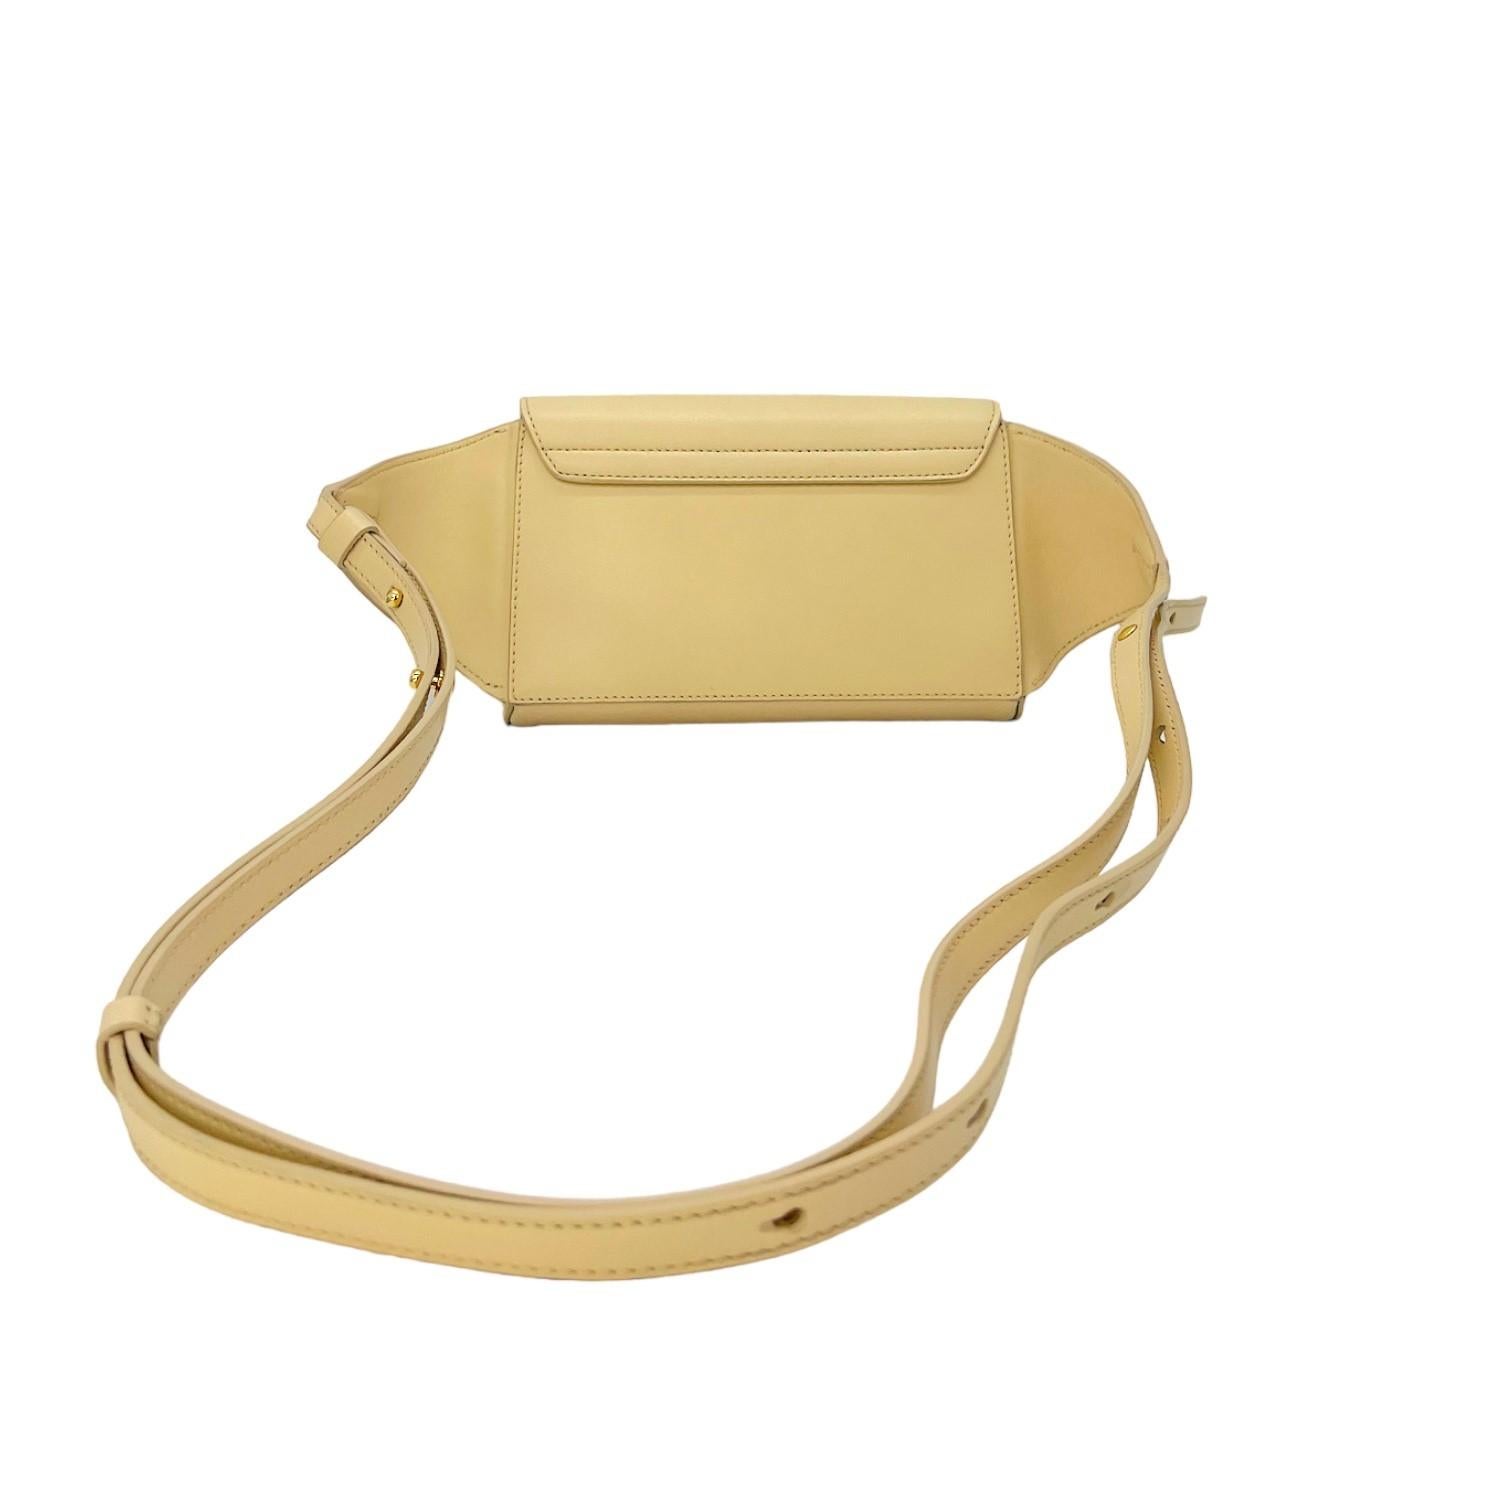 Ce sac ceinture Chloé a été confectionné en Italie et est finement réalisé en cuir de veau et daim avec des accessoires en métal doré. Il est doté d'une fermeture à bouton-pression rabattable qui s'ouvre sur un intérieur en toile avec une pochette.